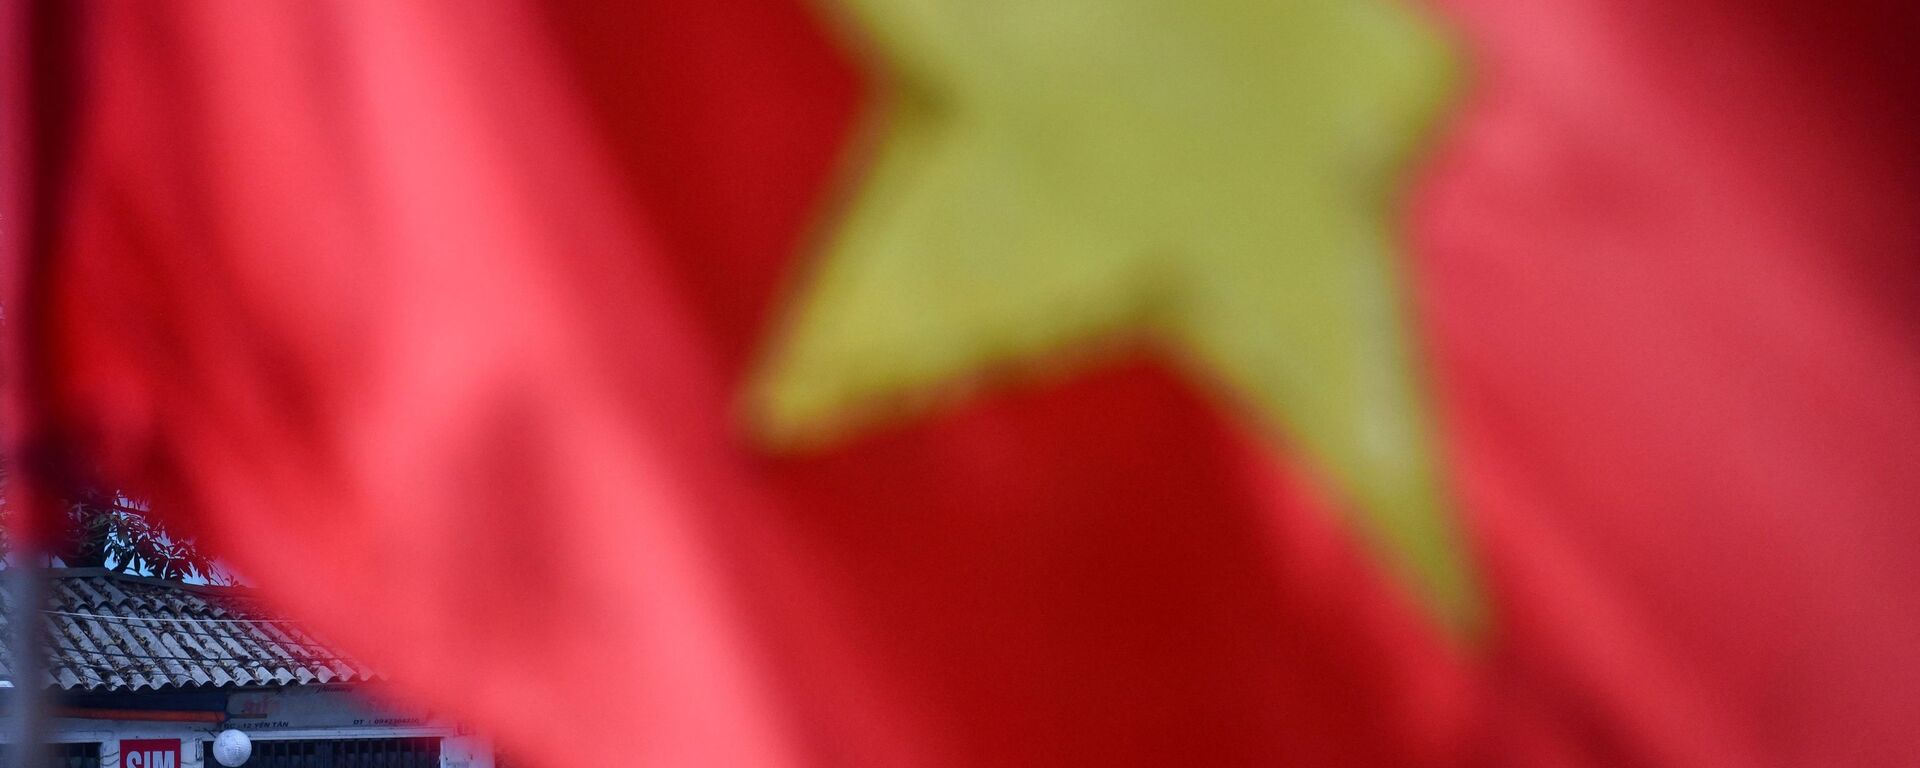 Cột cờ Việt Nam, Hà Nội. - Sputnik Việt Nam, 1920, 07.12.2021